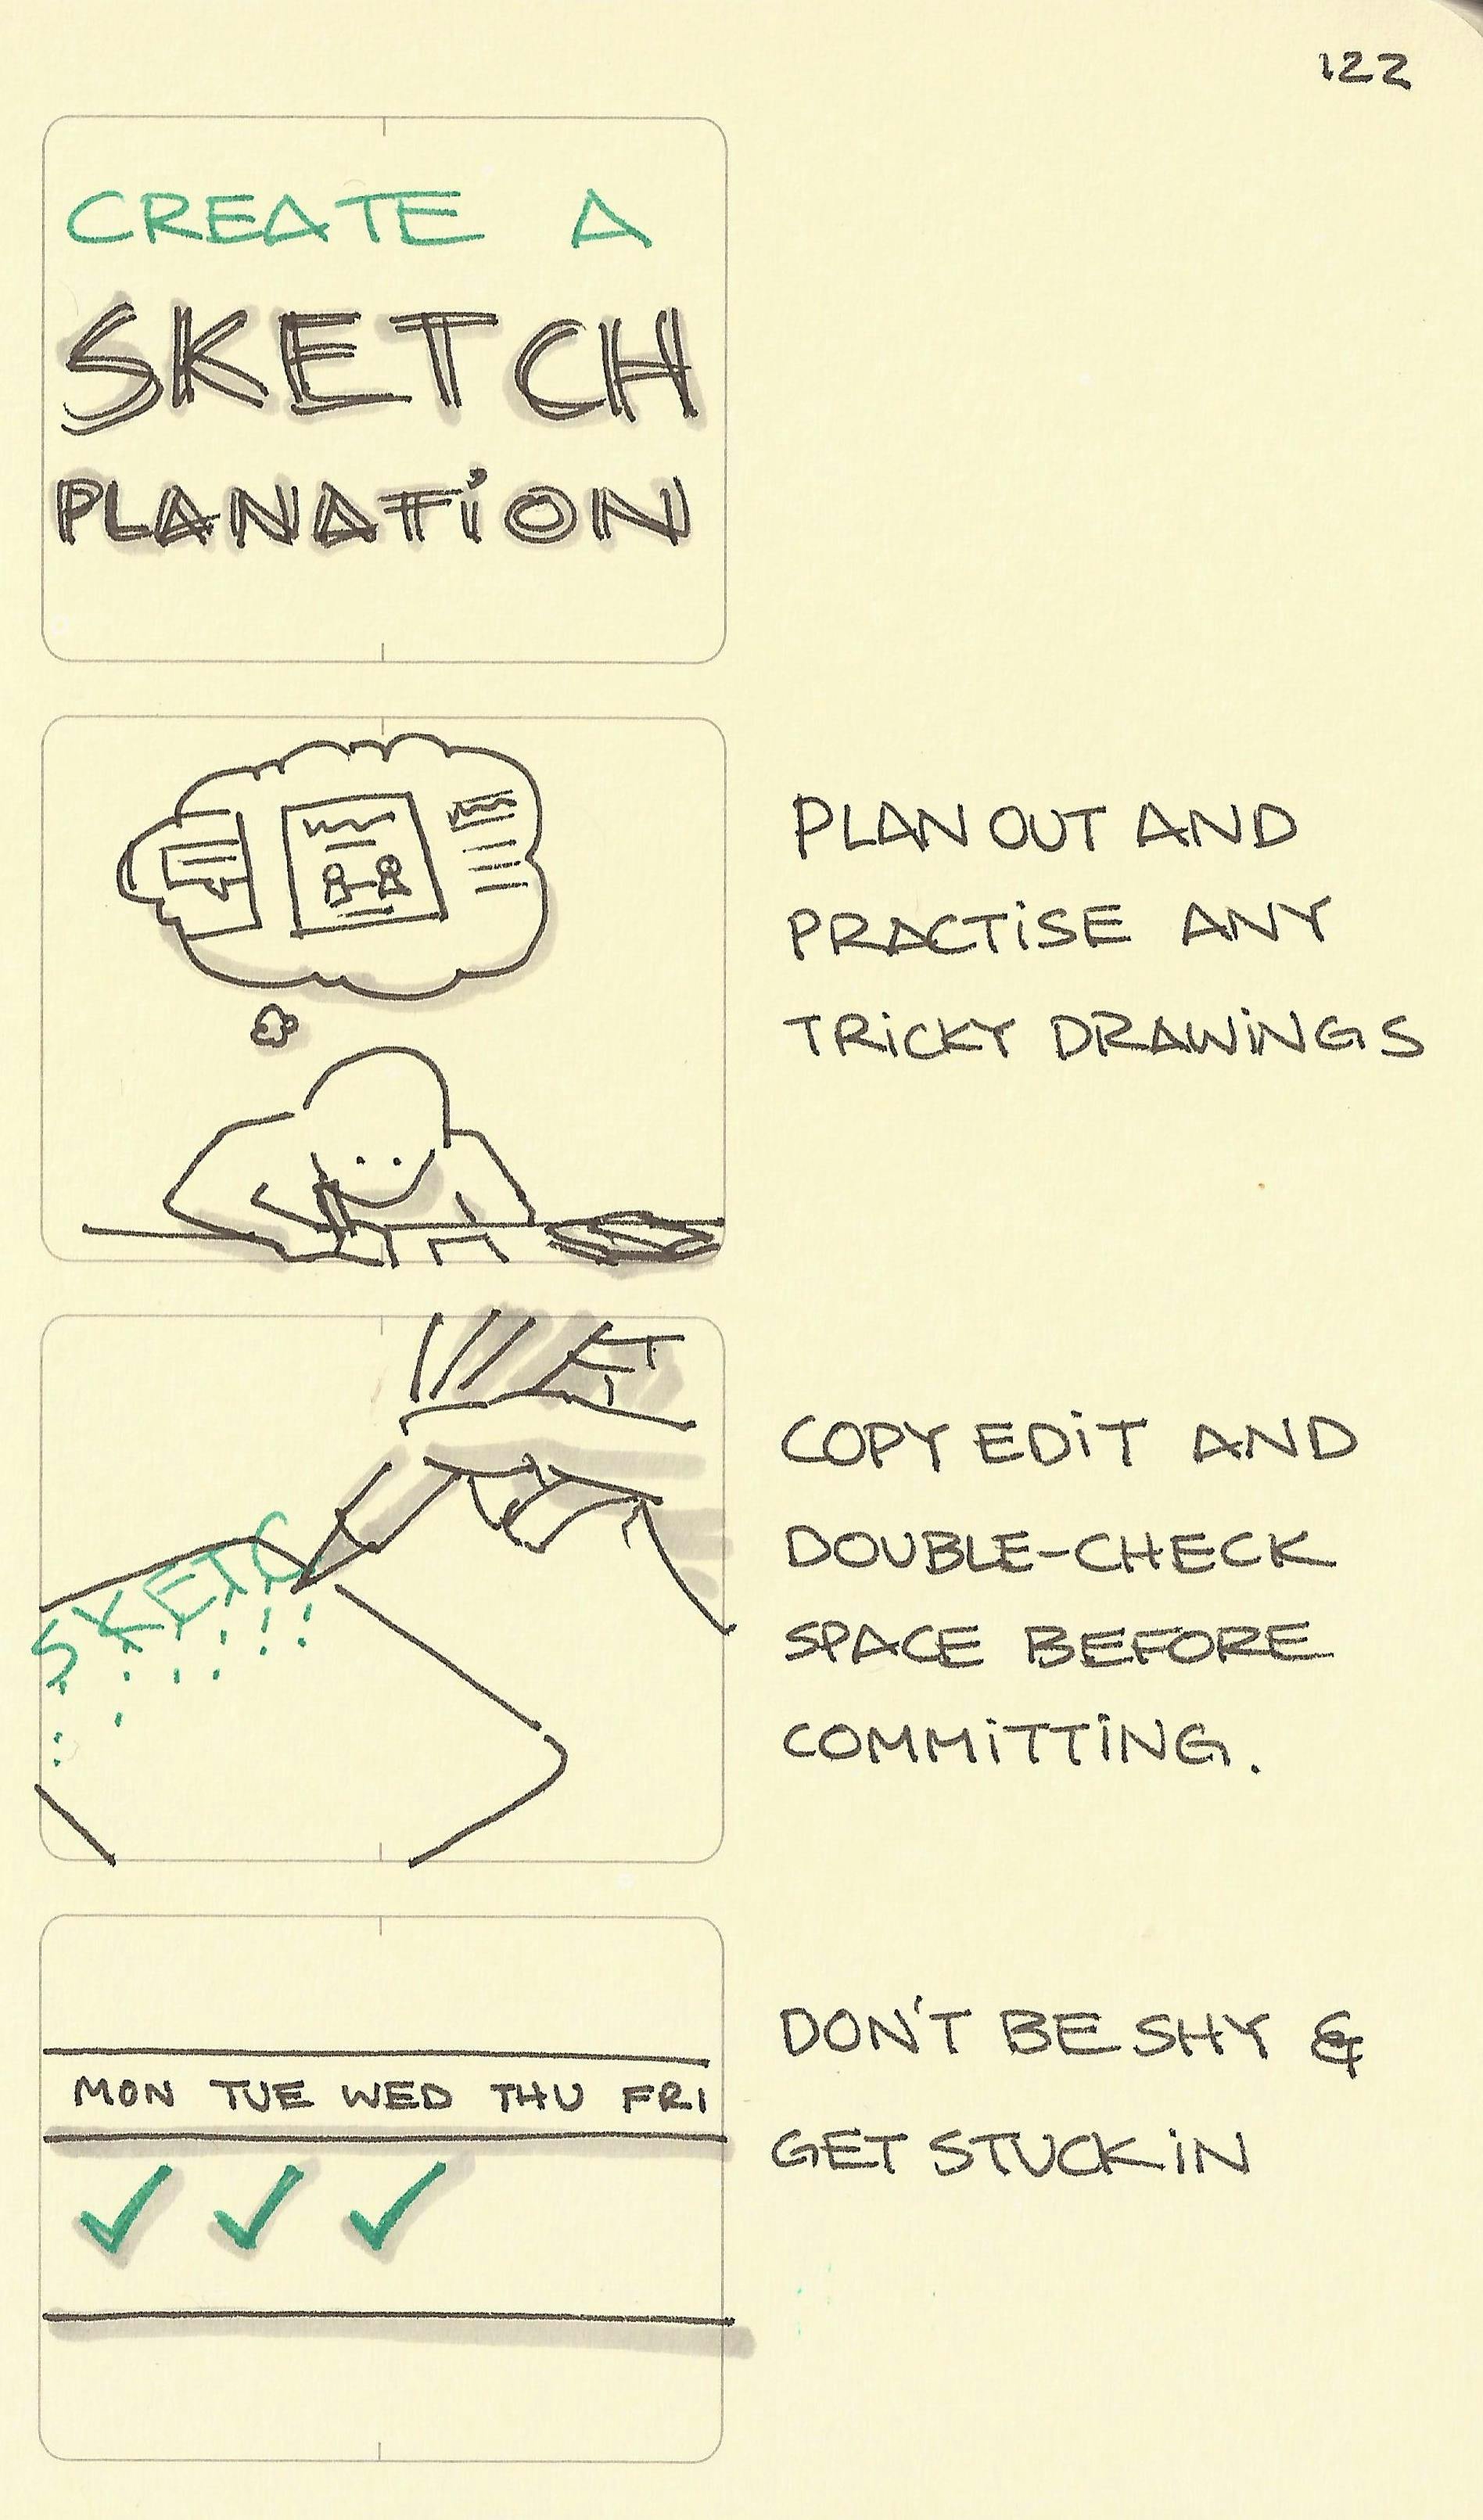 Create a sketchplanation - Sketchplanations